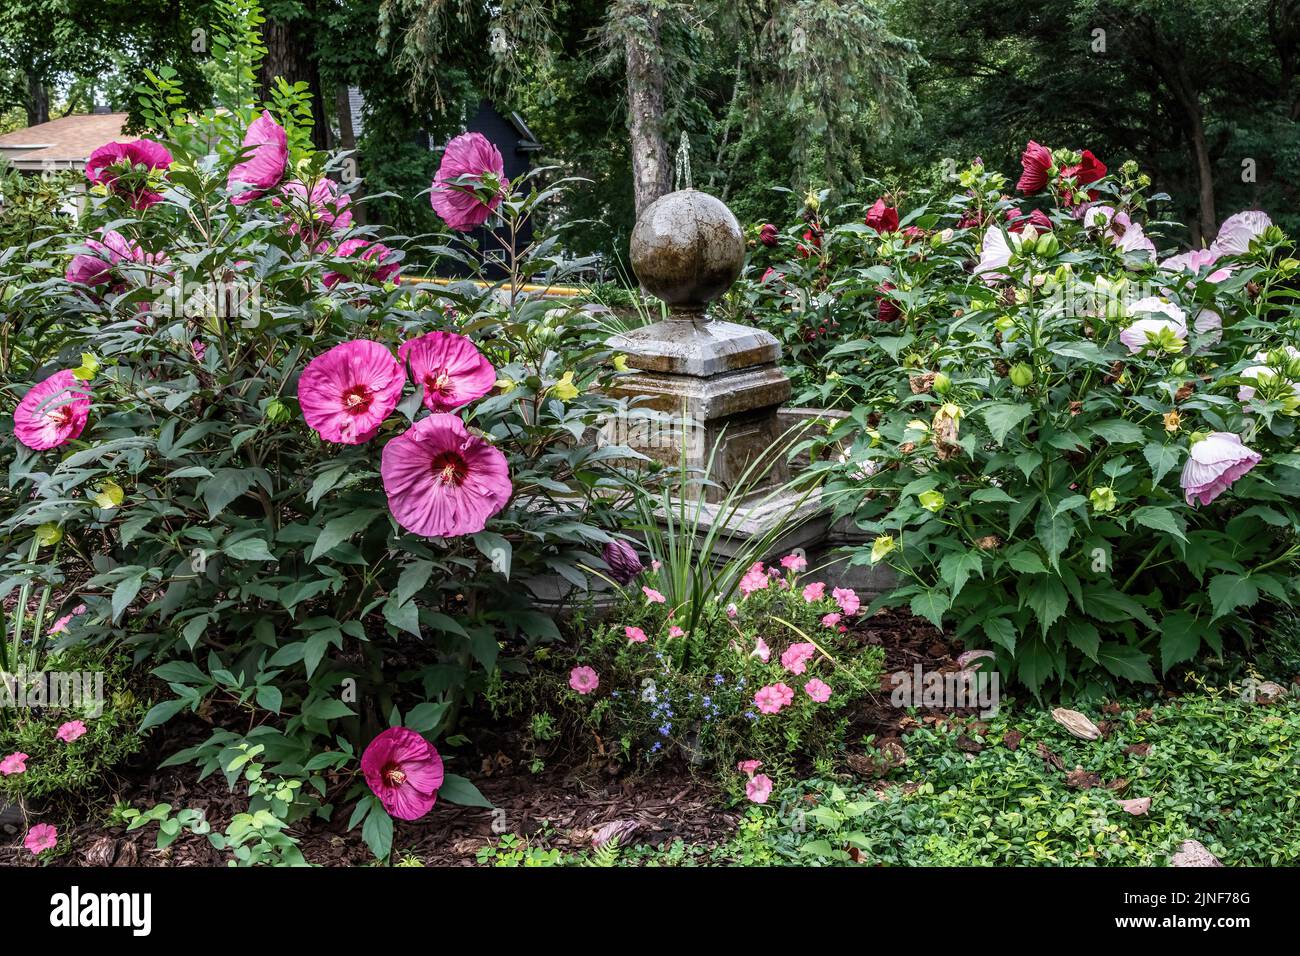 Rosa und weiße Hibiskuspflanzen wachsen auf beiden Seiten eines römisch inspirierten Brunnens in einem Spätsommergarten. Stockfoto